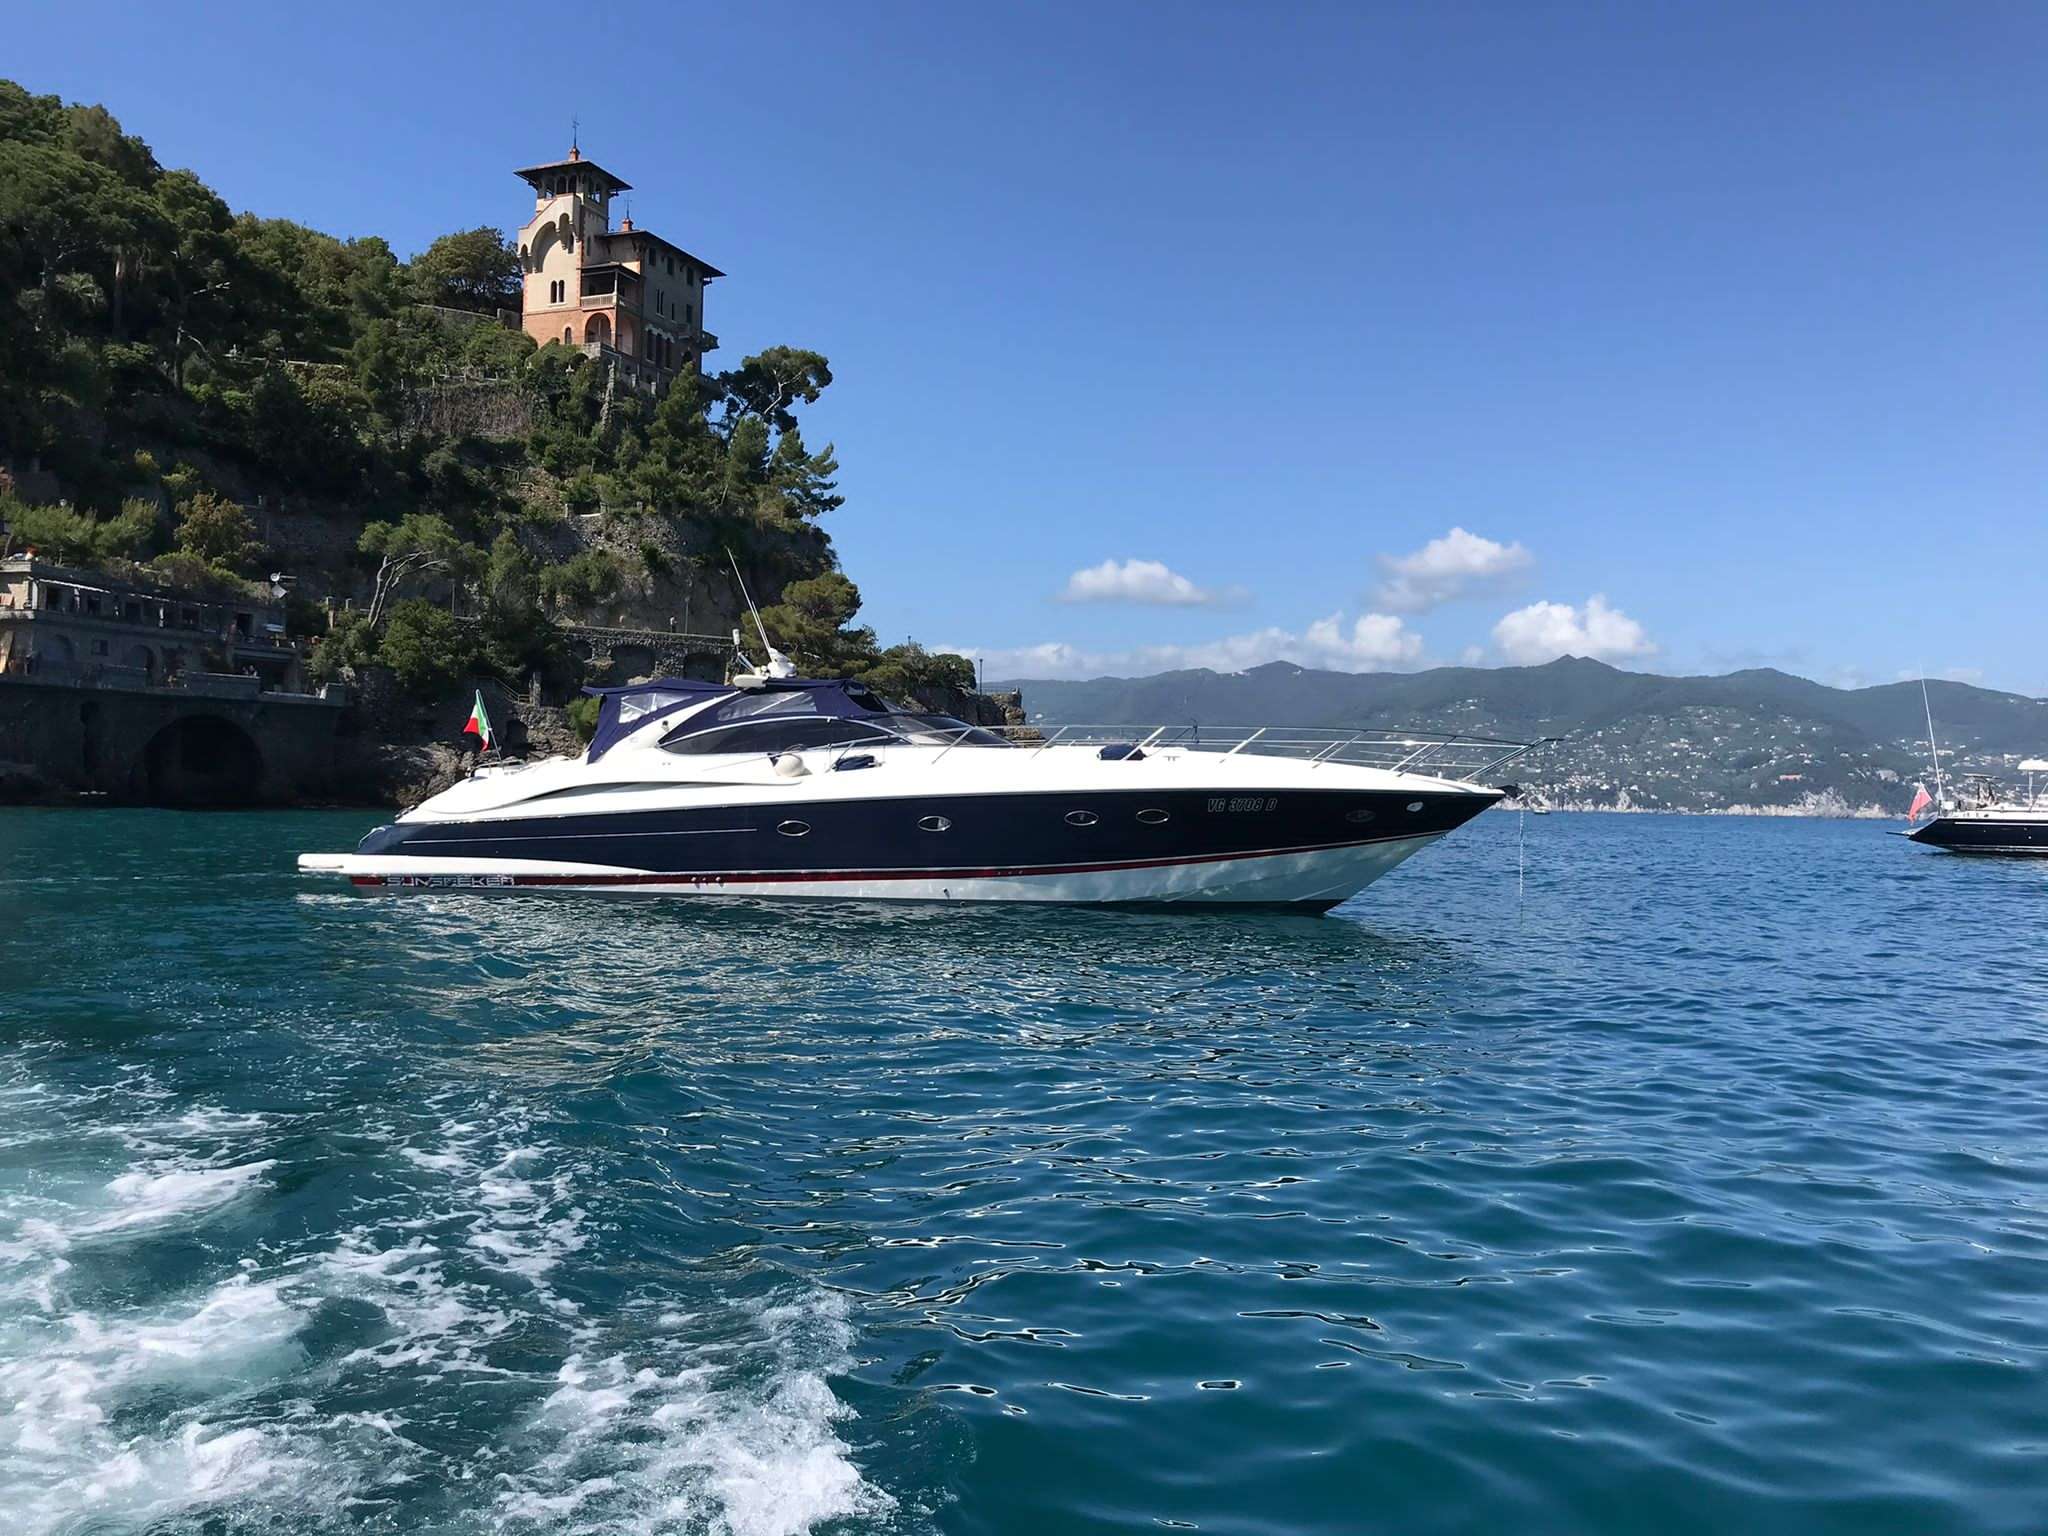 Magic Sun Sunseeker 60S - Catamaran Charter Corsica & Boat hire in Fr. Riviera, Corsica & Sardinia 2